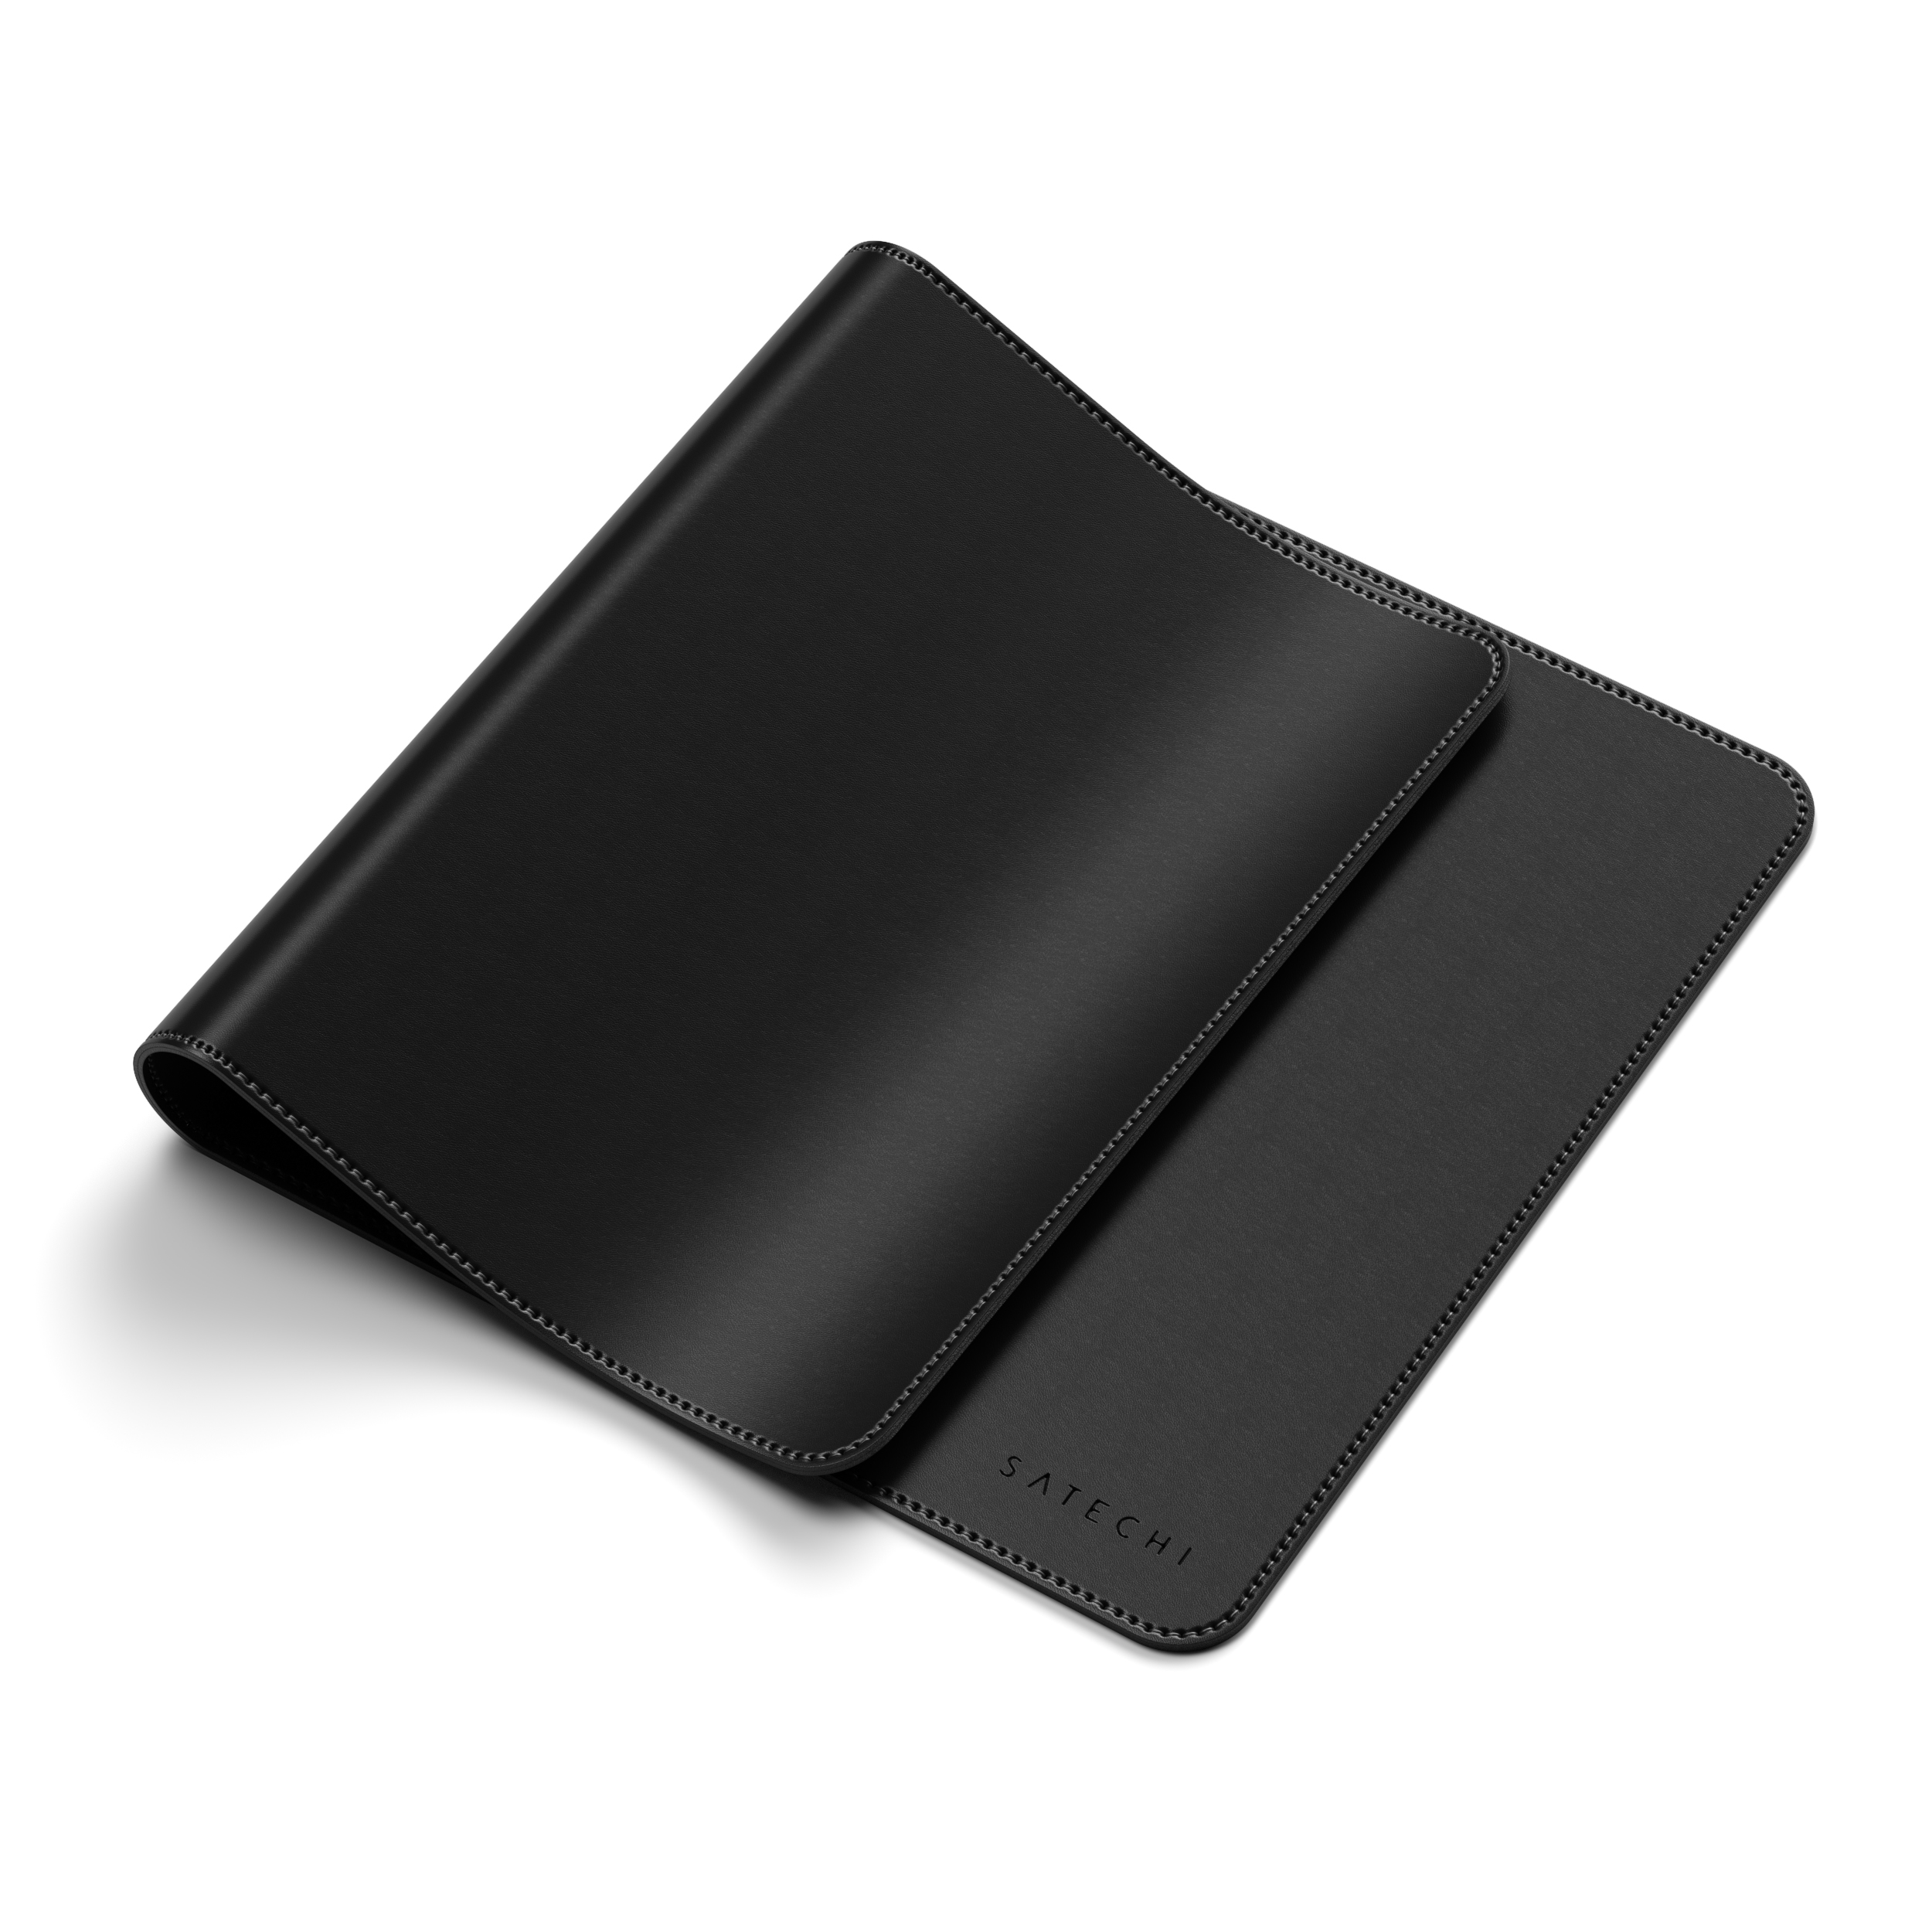 Deskmate Black Mousepad cm) 58,42 Eco-Leather (31 SATECHI - cm x